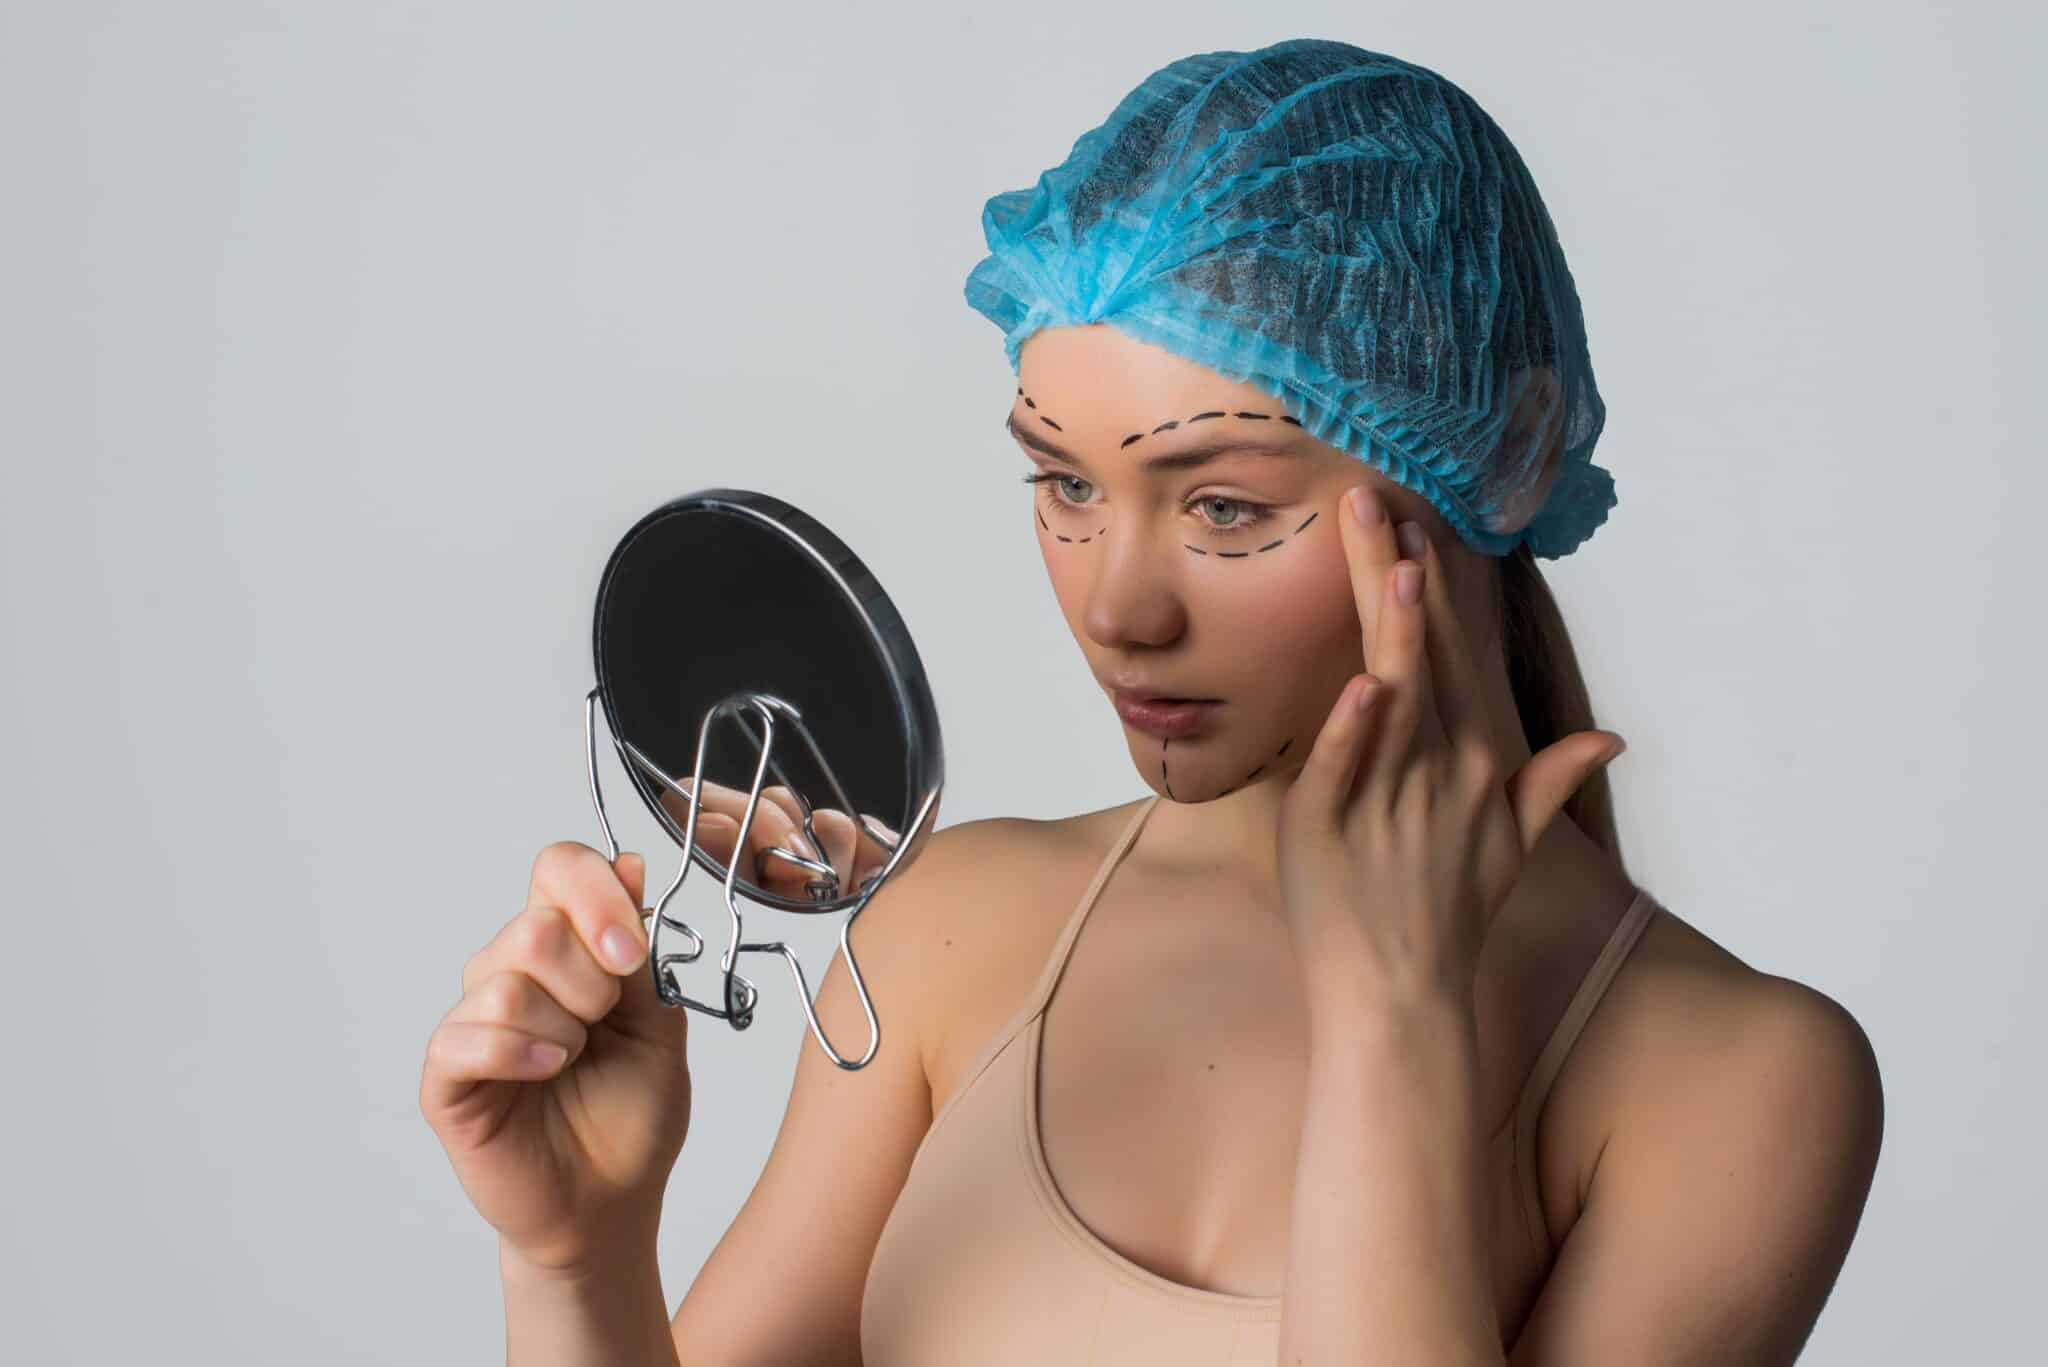 Une femme portant un bonnet chirurgical se regarde dans un miroir avant ses interventions chirurgicales esthétiques.